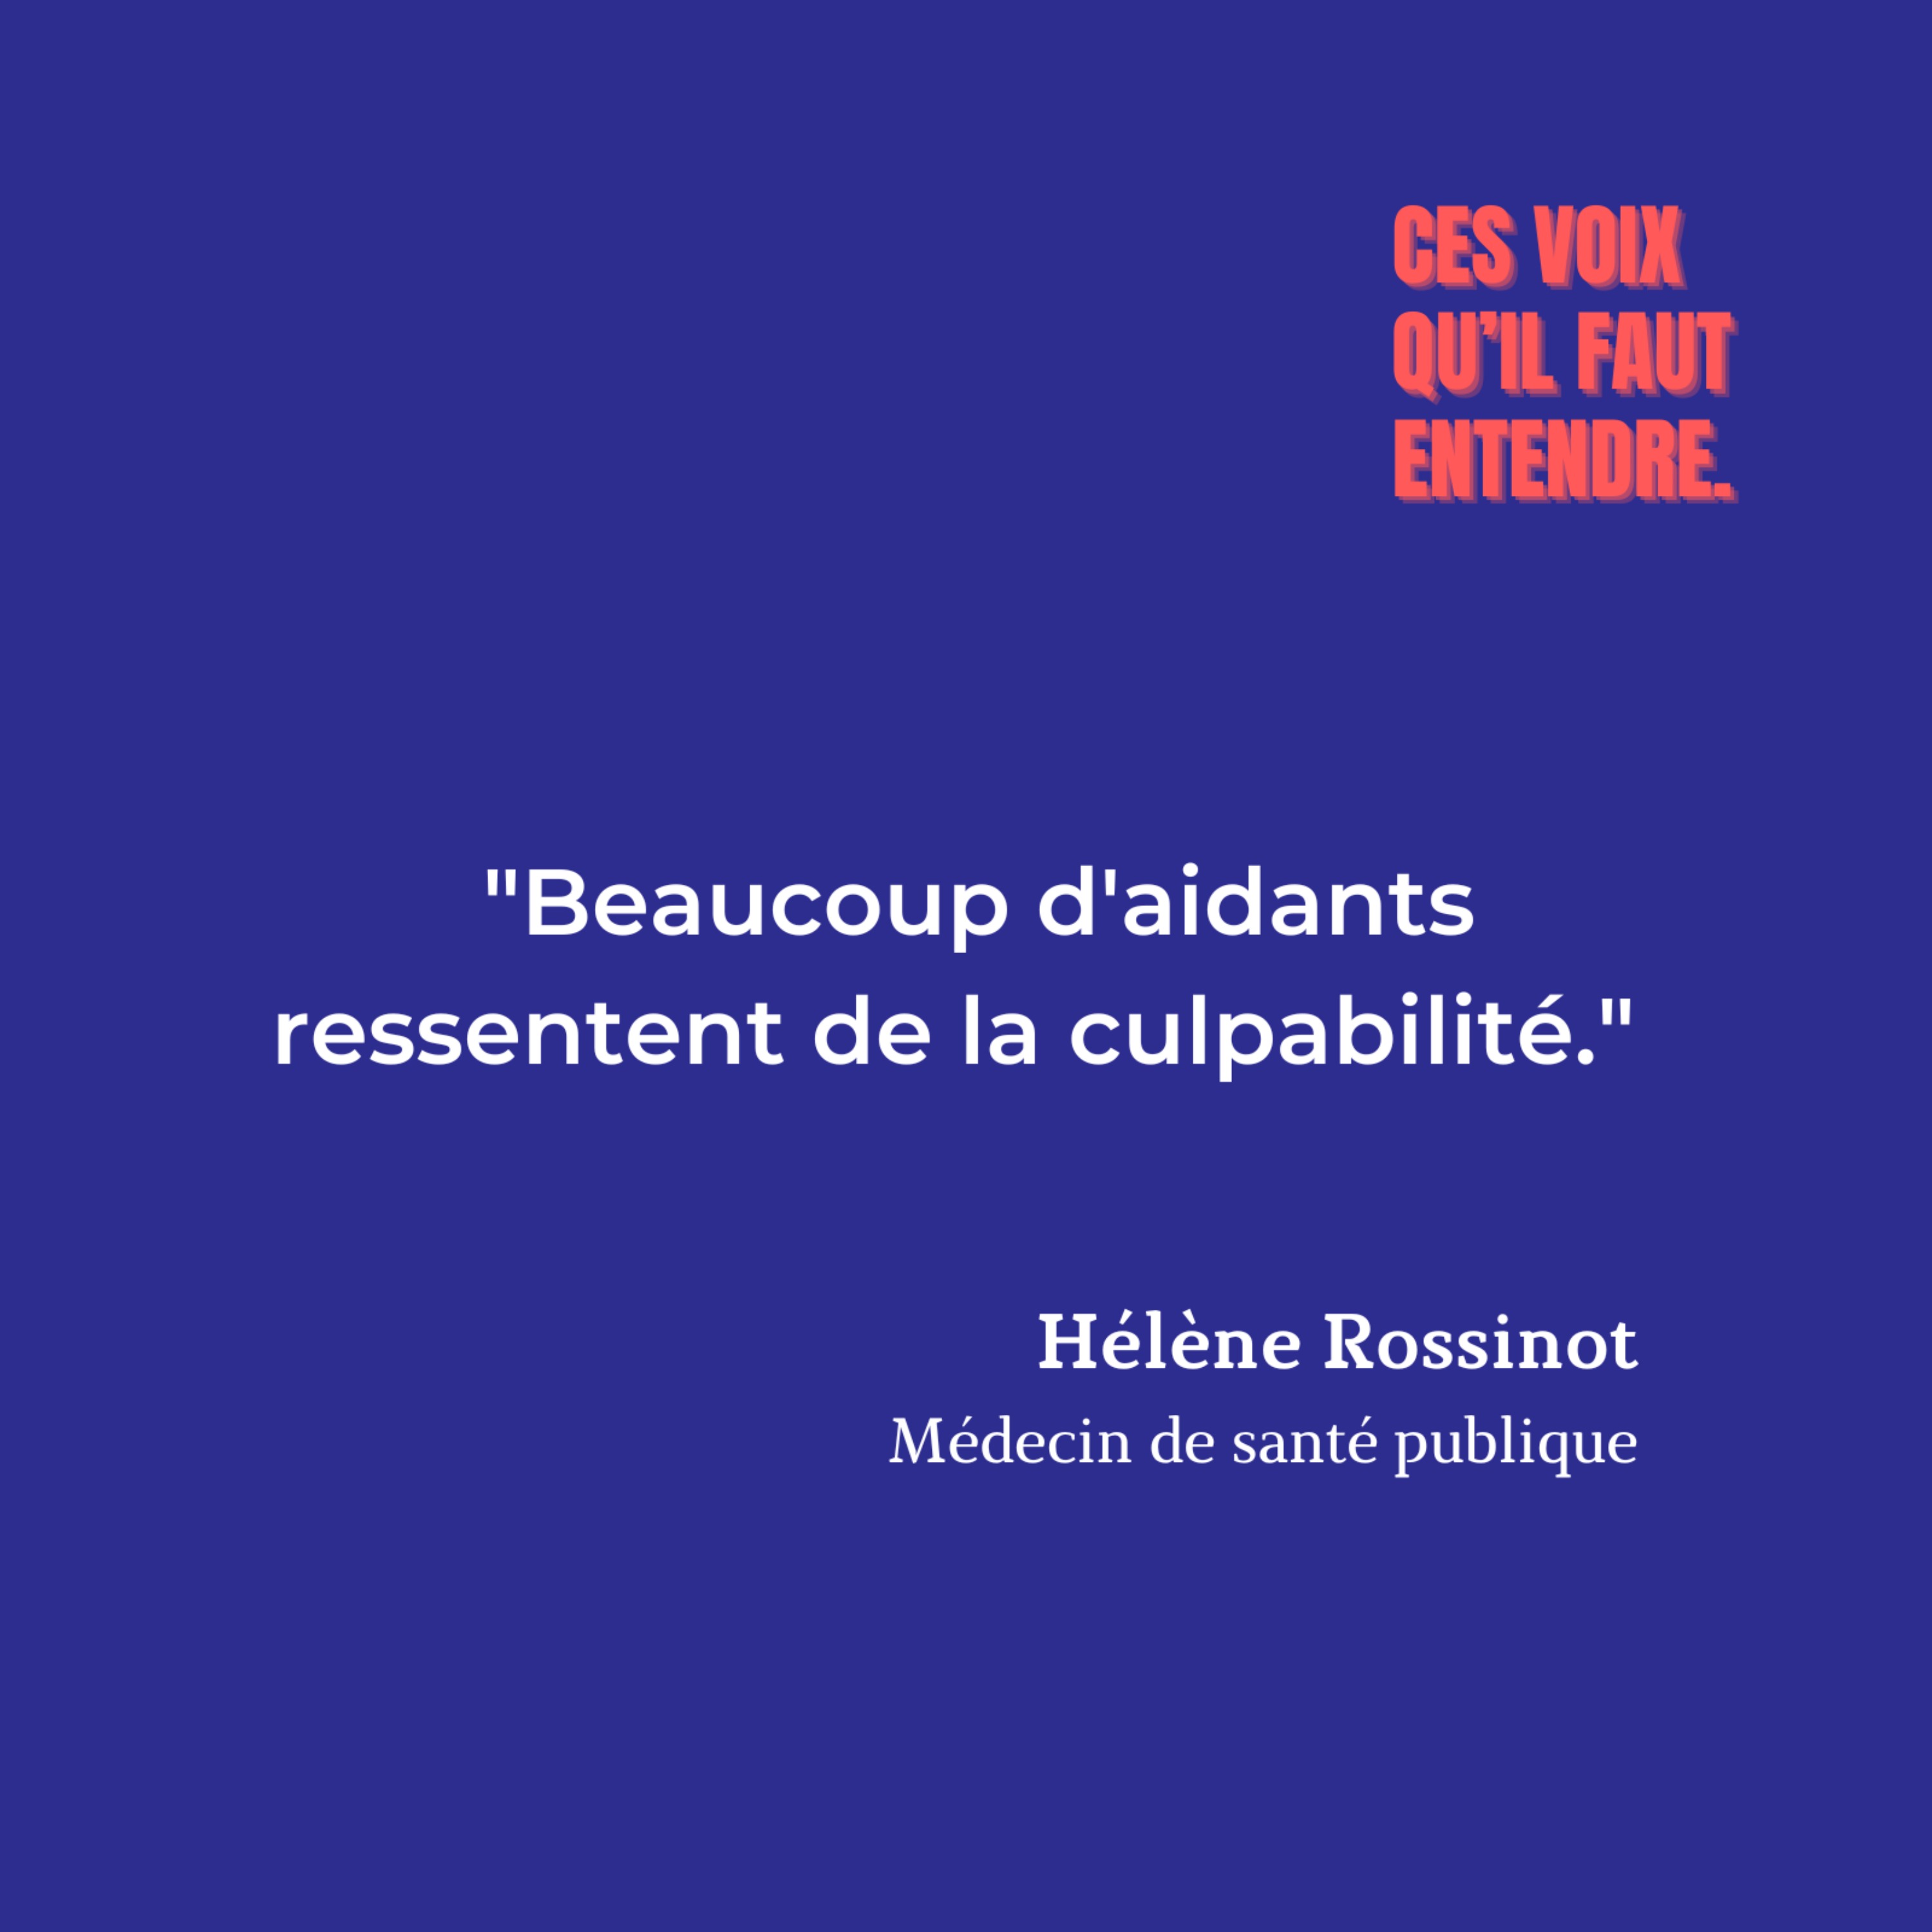 [EXTRAIT] Hélène Rossinot - Les émotions et les aidants